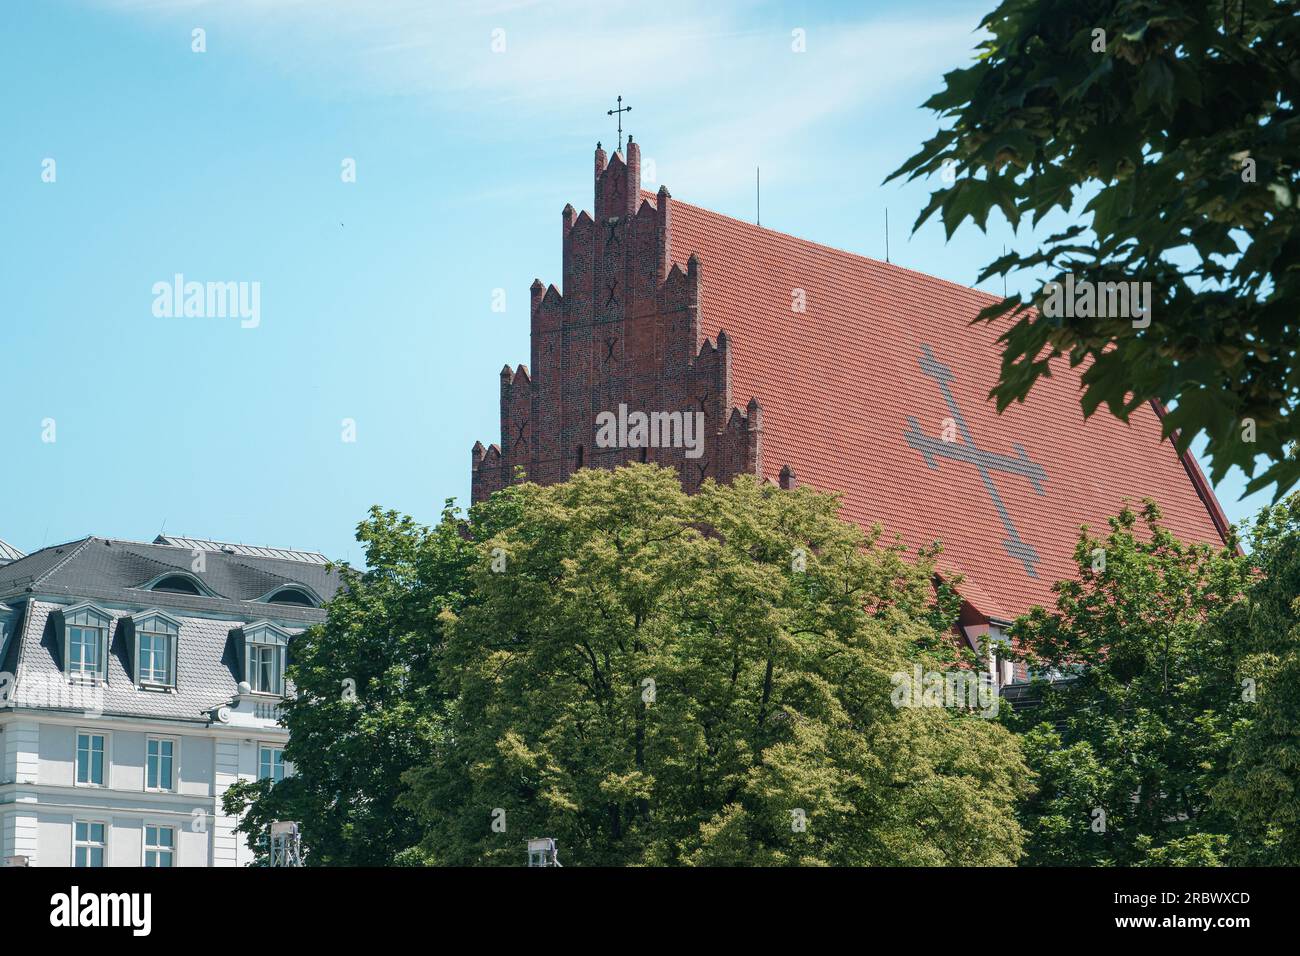 Dach der Kirche St. Stanislaus in Breslau. Gekacheltes gotisches Dach mit Kreuz Stockfoto